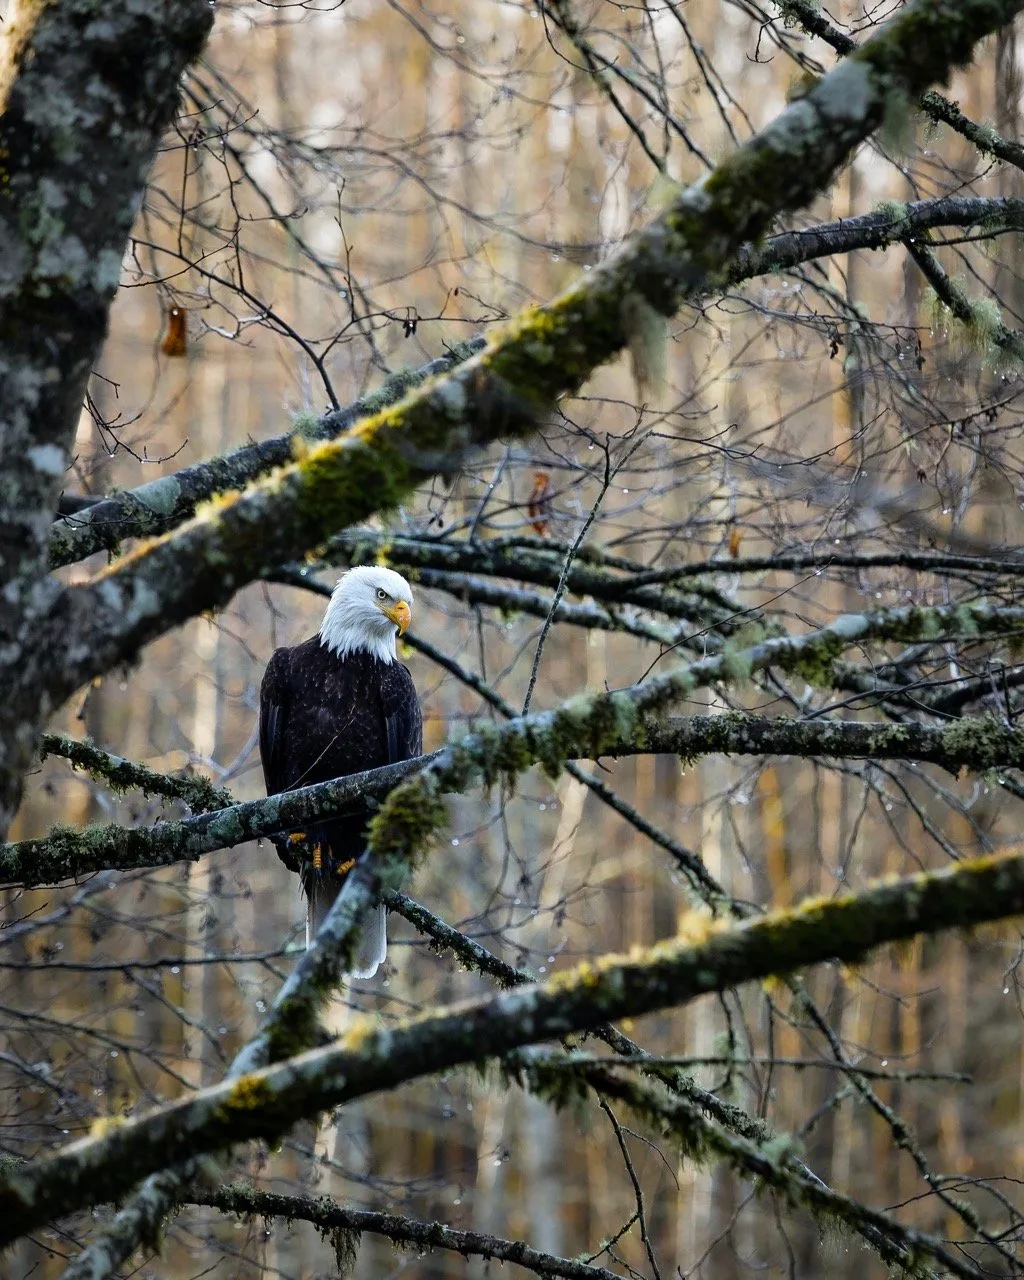 A bald eagle perches on a branch